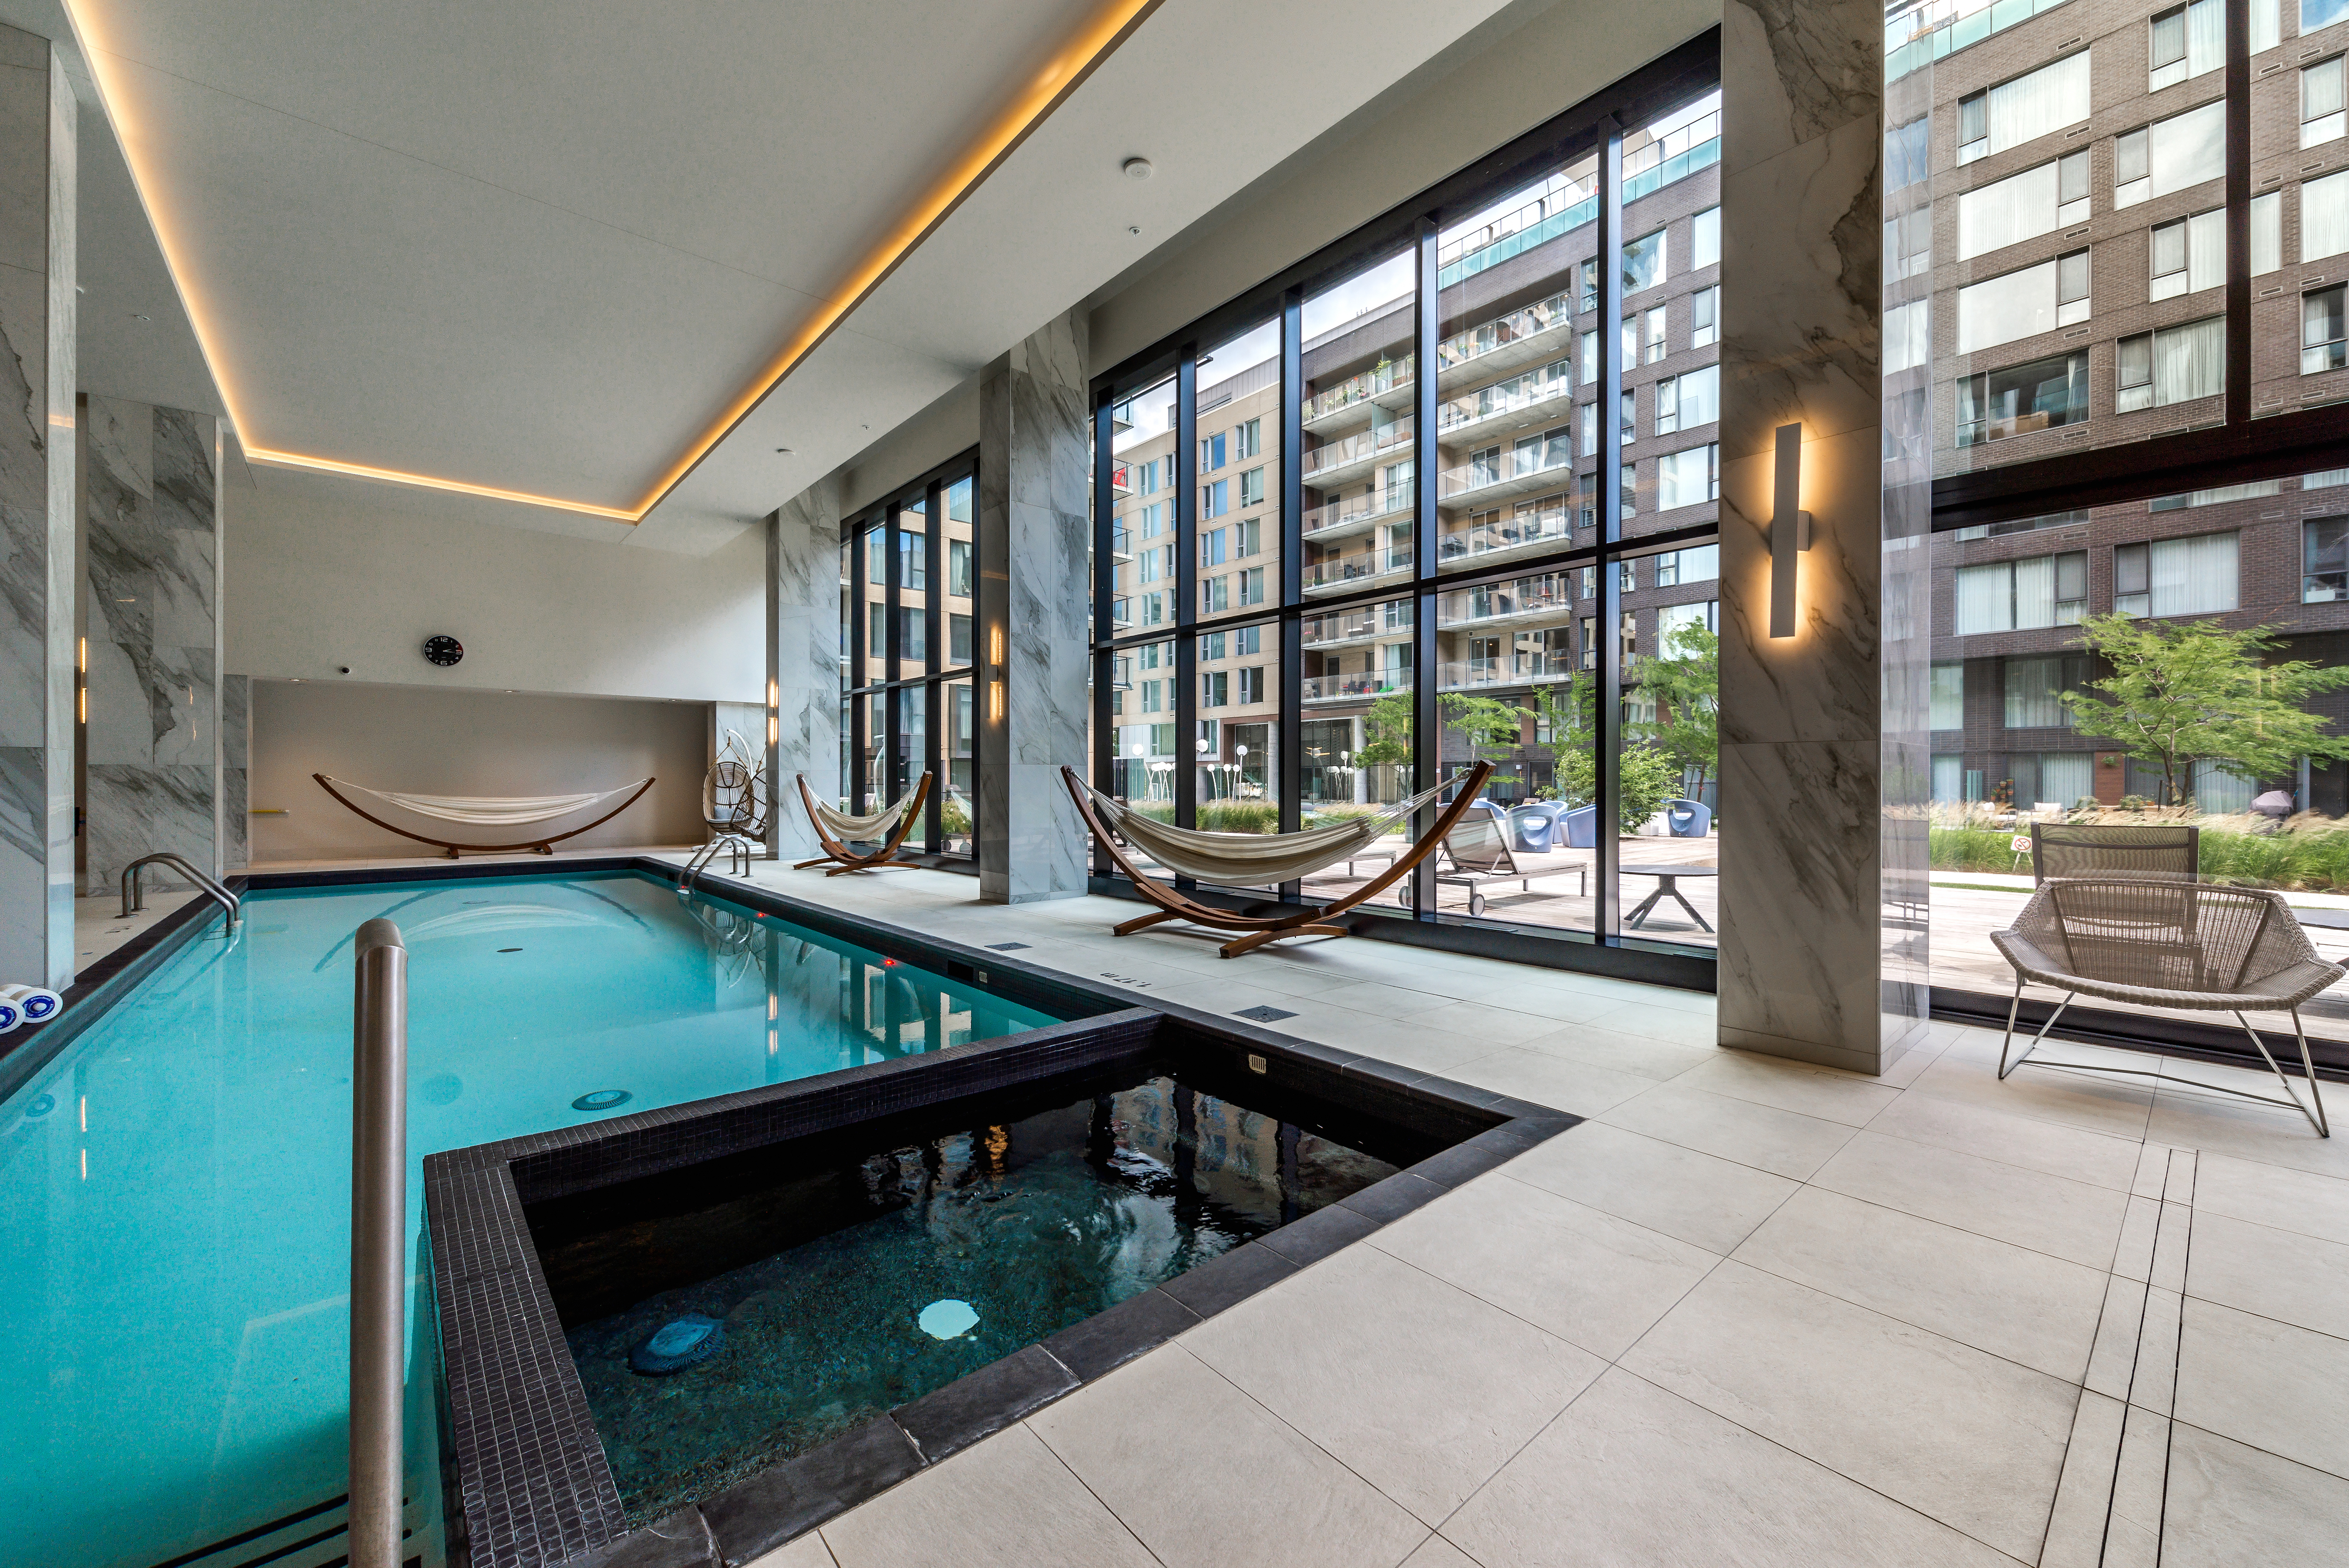 A hotel pool